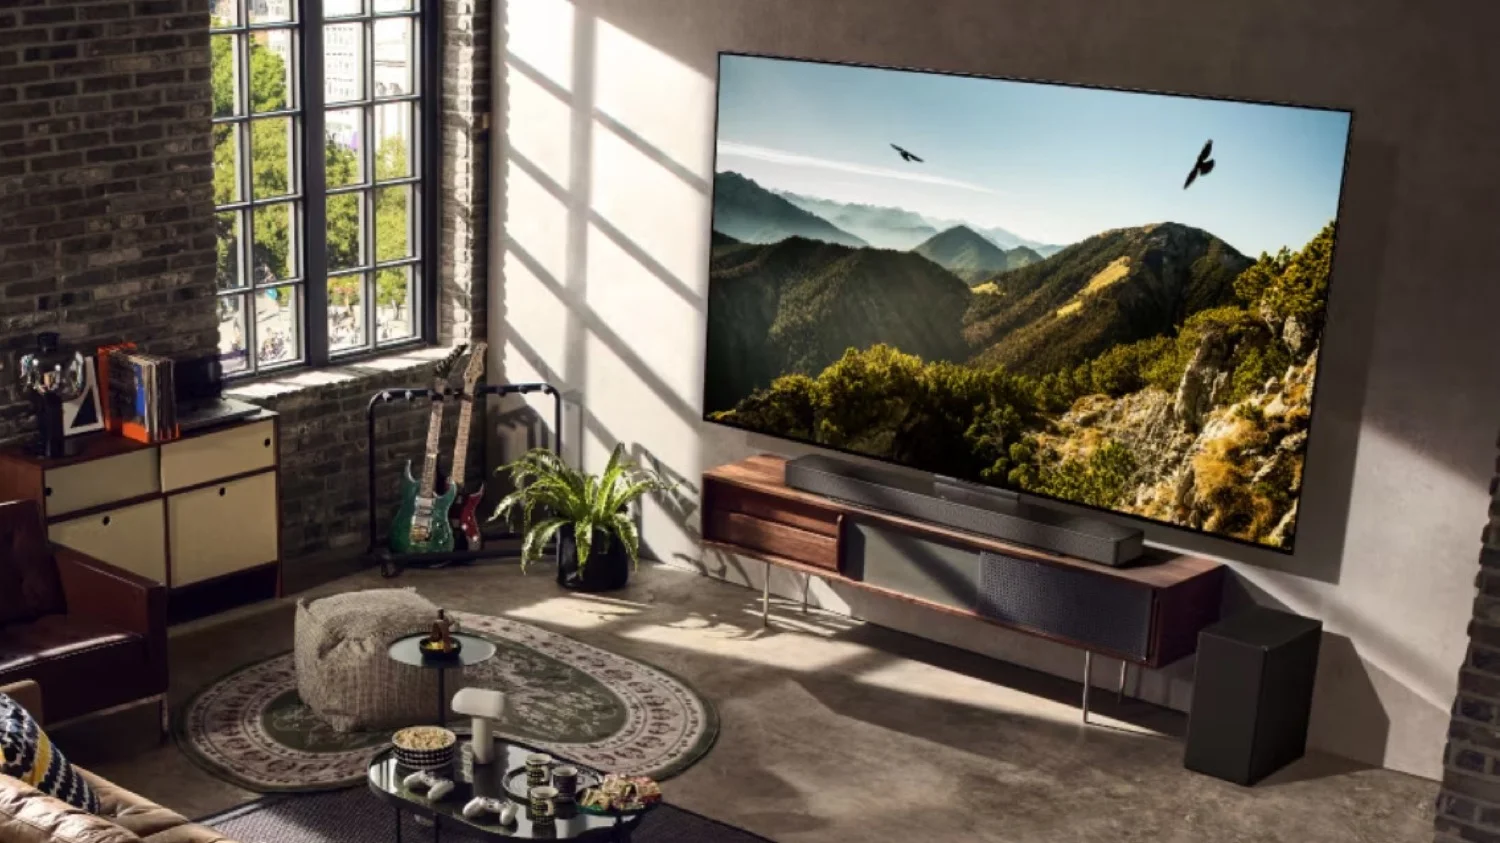 Los televisores grandes encabezan el auge de la experiencia inmersiva